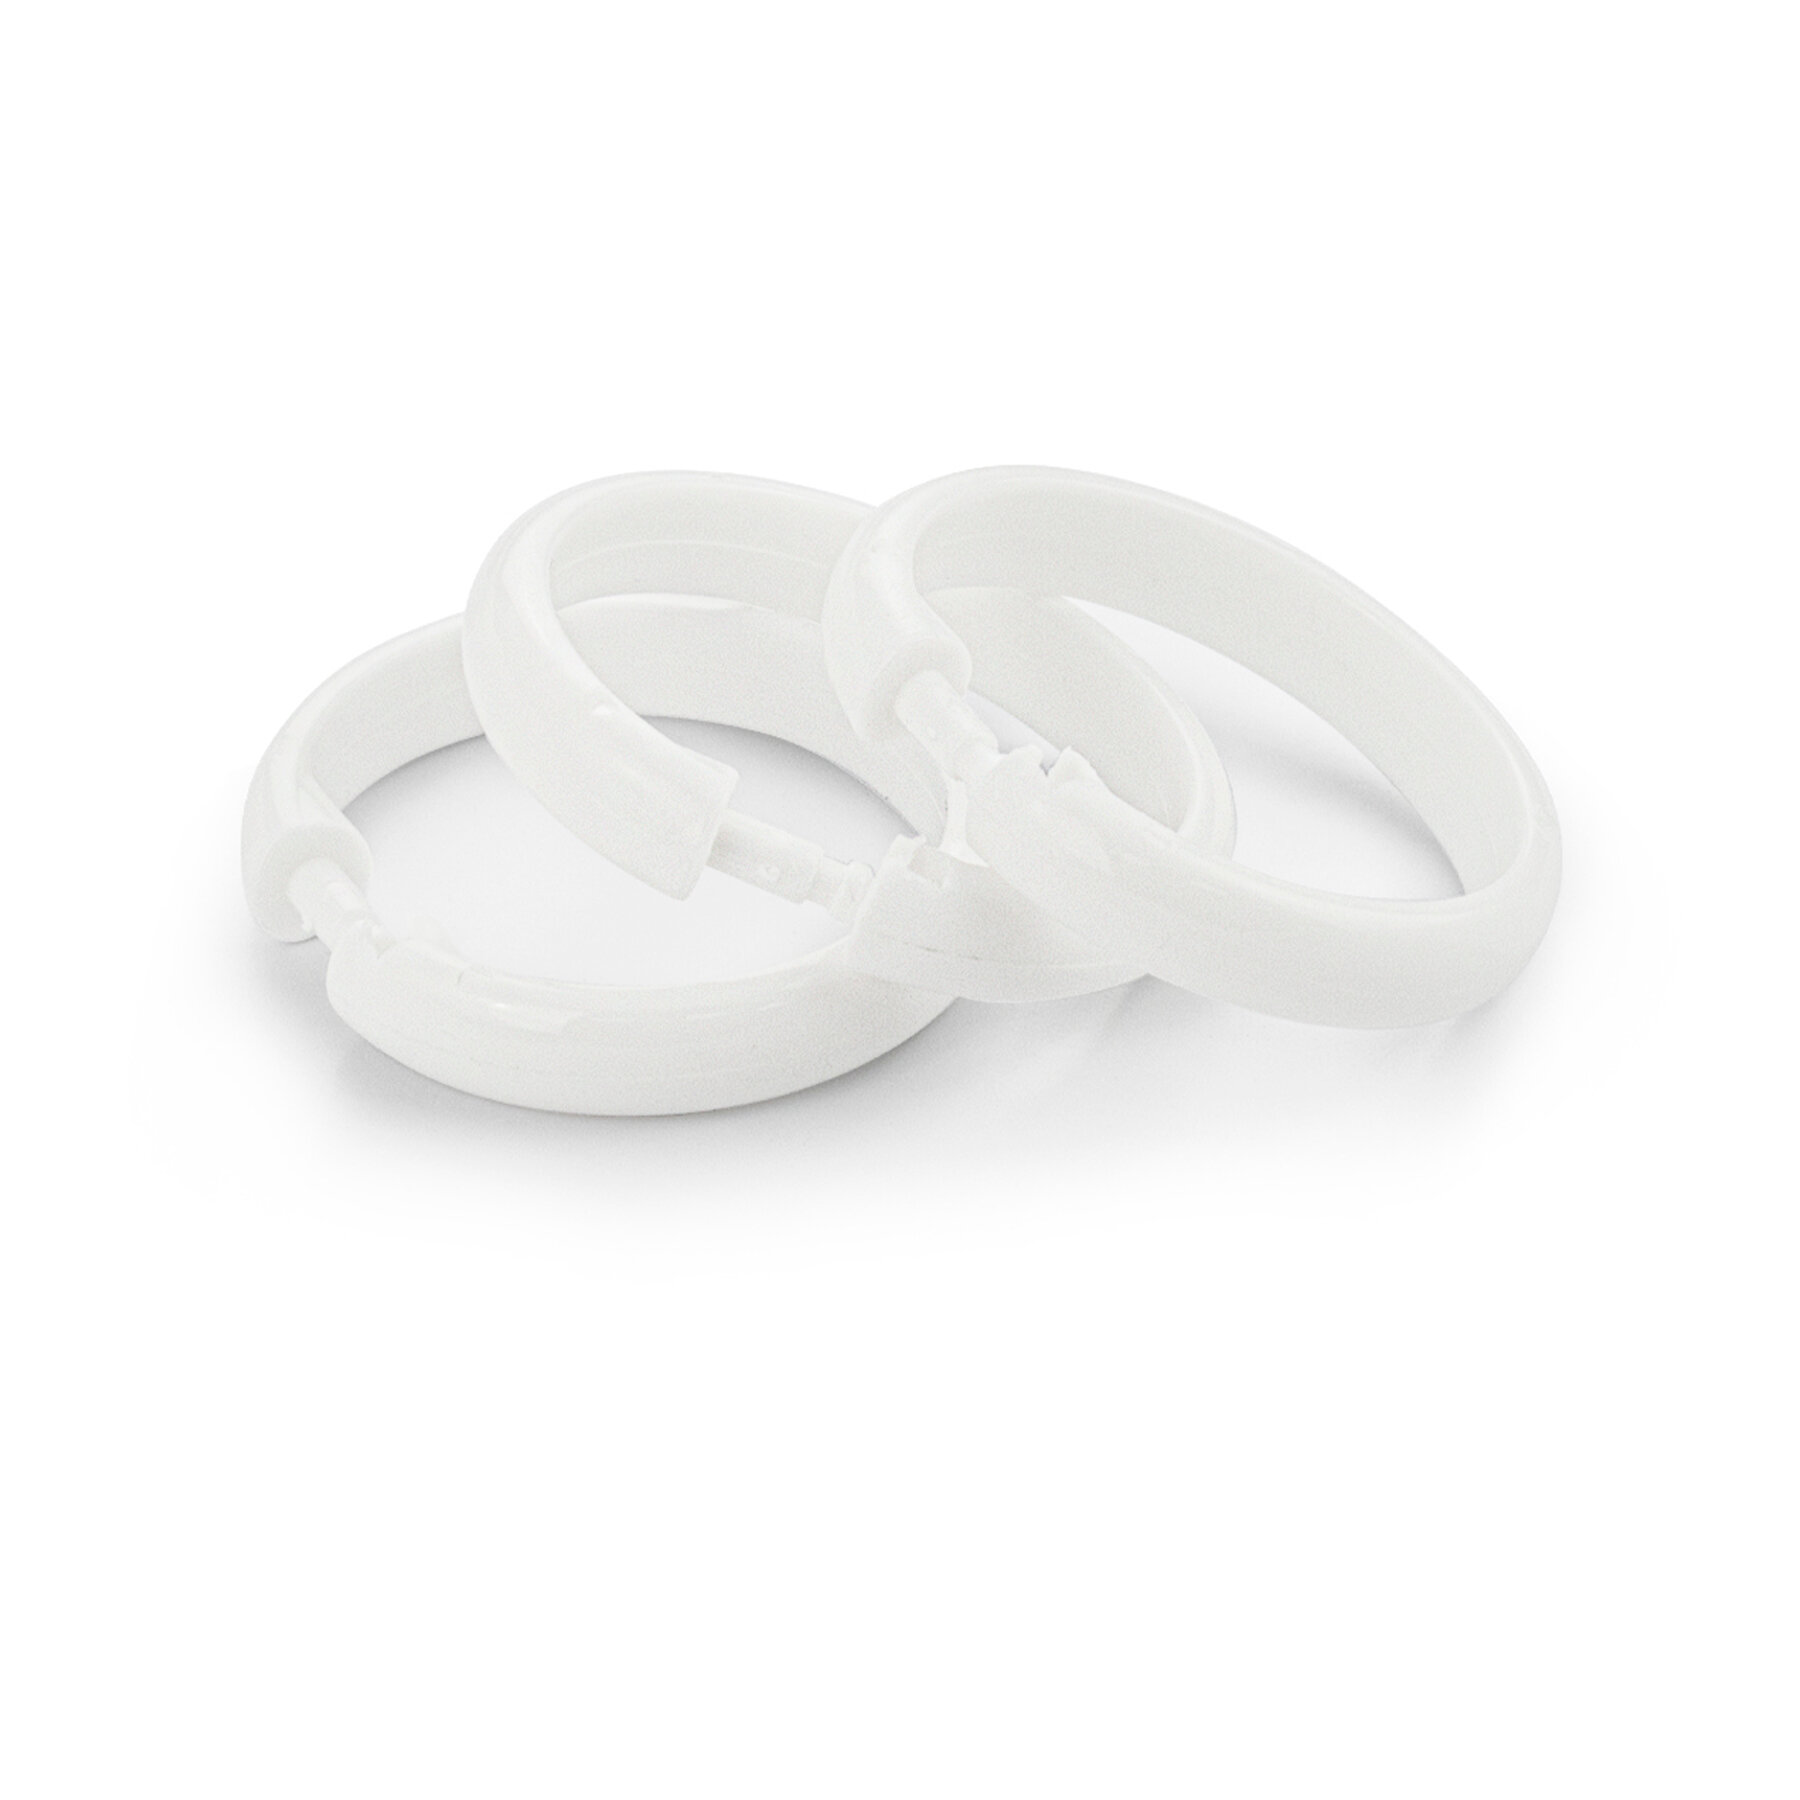 Кольца для штор и карнизов в ванную и душевую белые пластиковые упаковка 12 штук . Модель люкс санакс 75006